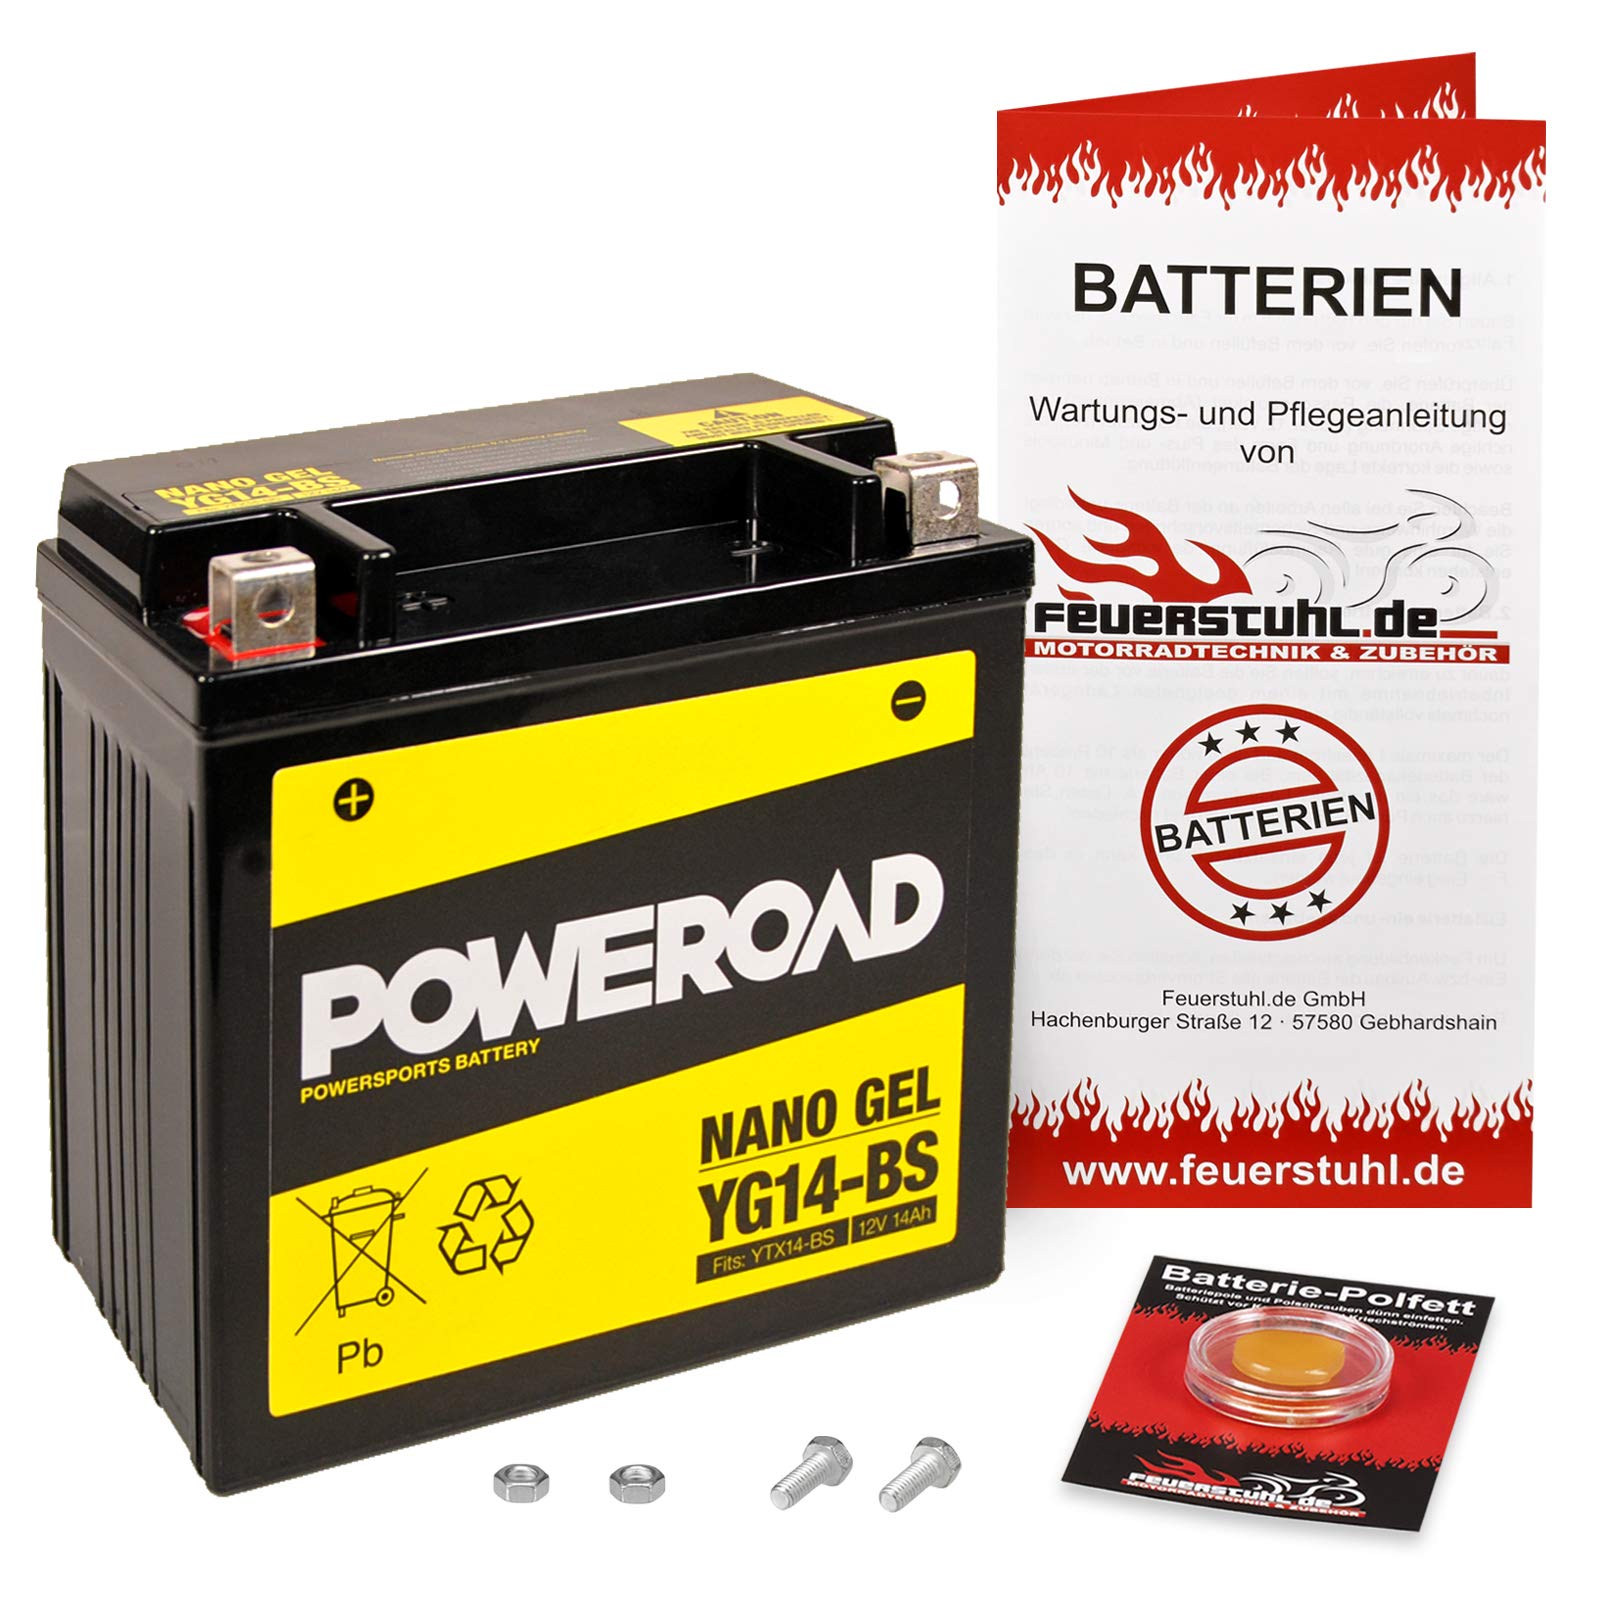 Gel-Batterie für Kawasaki VN 800 Drifter (VN800C) wartungsfrei, einbaufertig, startklar, inkl. 7,50€ Pfand von Feuerstuhl.de GmbH